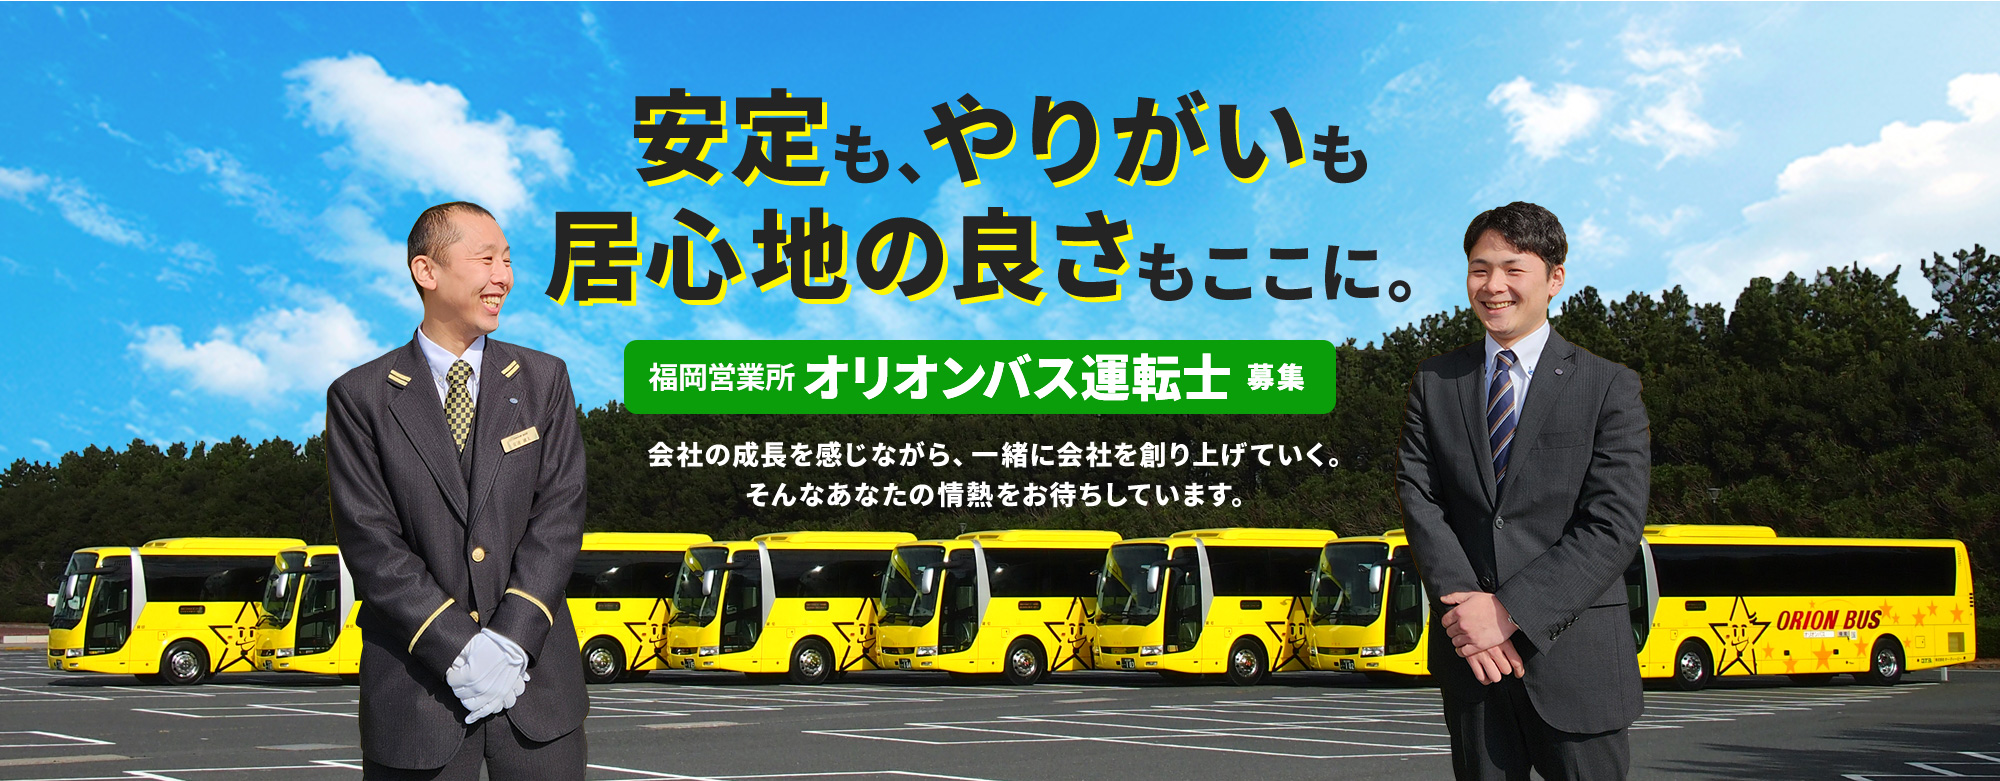 福岡営業所 オリオンバス運転士募集